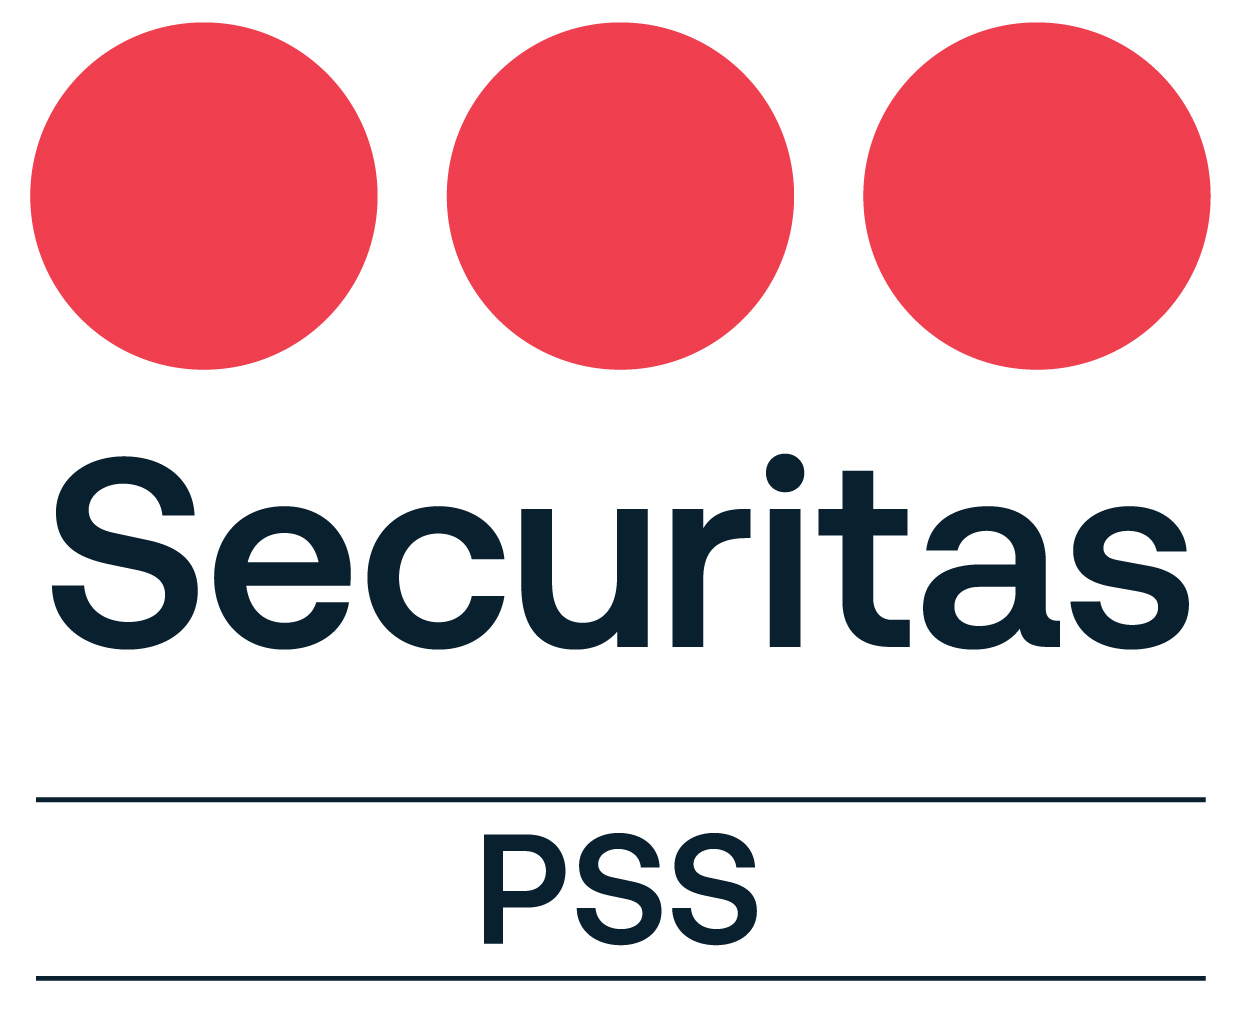 pss_securitas_logotype_rednavyblue_rgb